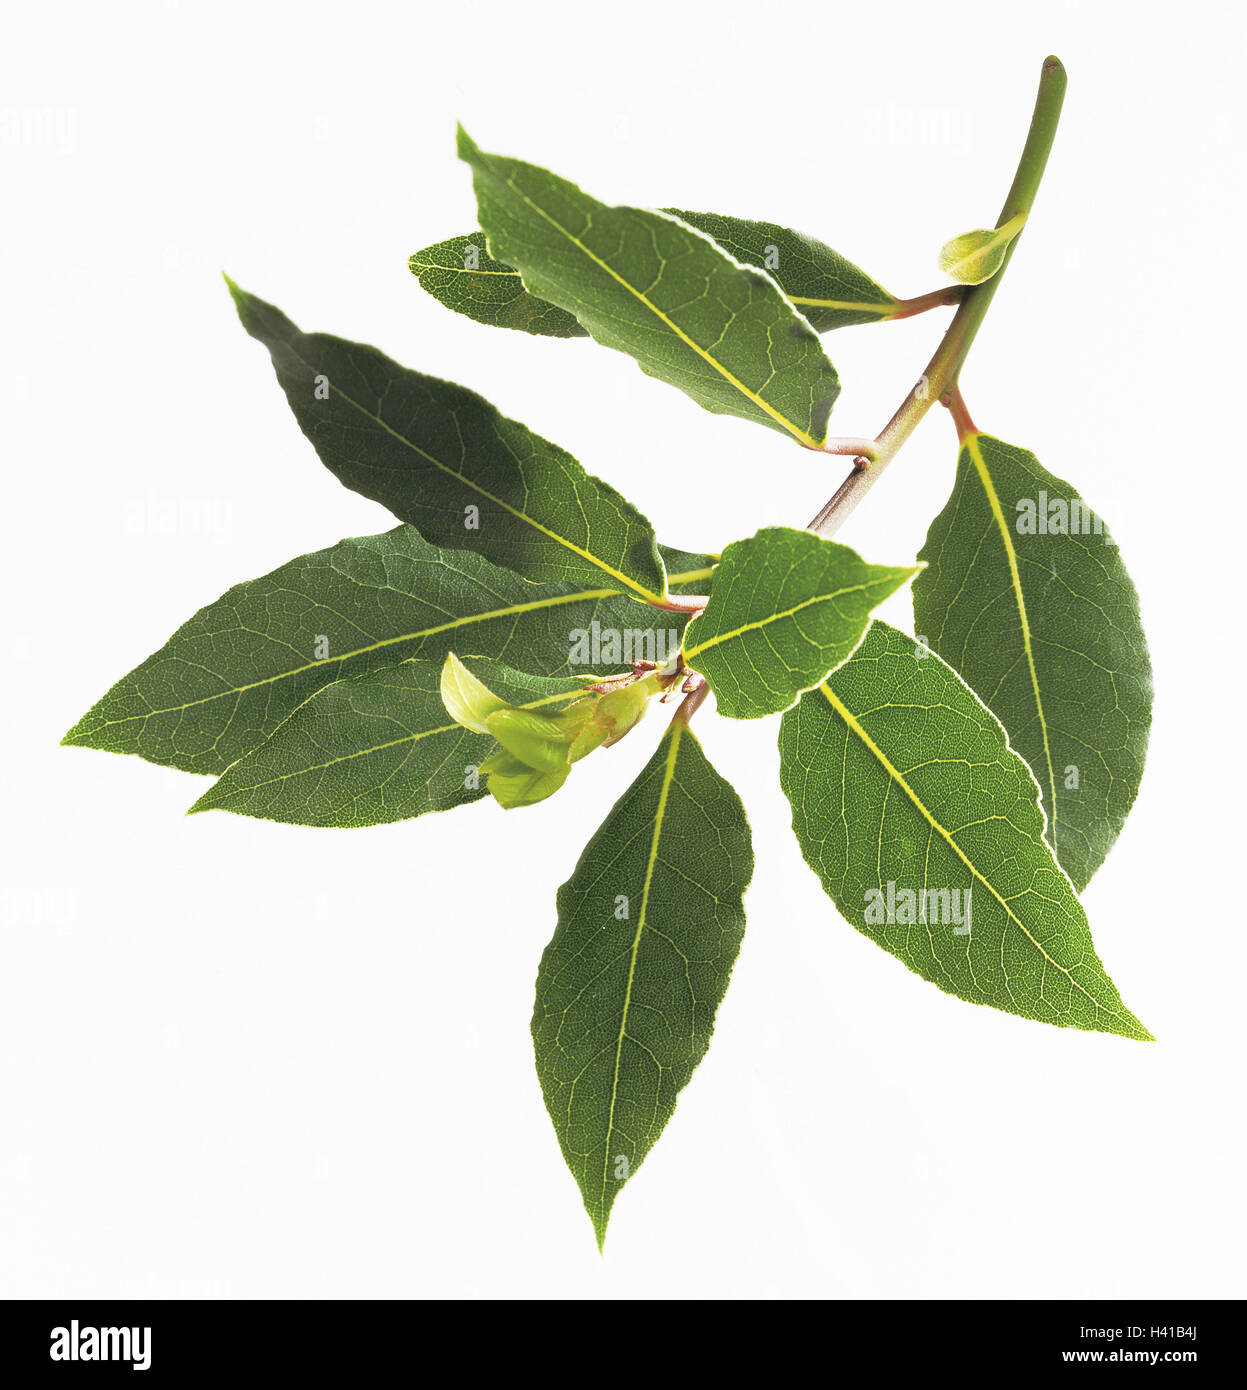 Bay leaf, Laurus nob